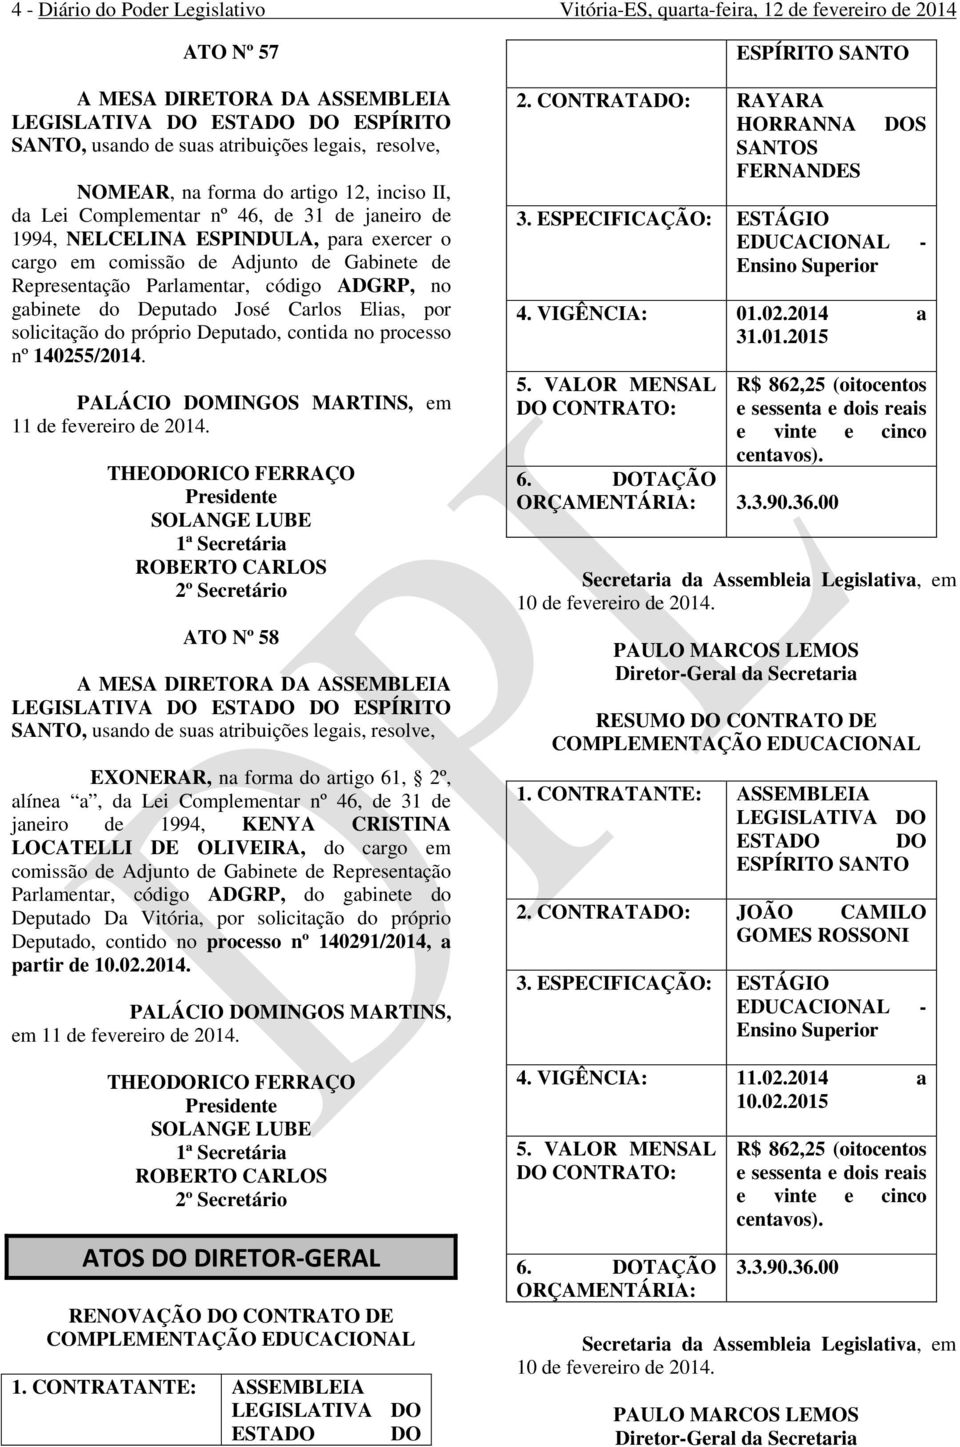 Parlamentar, código ADGRP, no gabinete do Deputado José Carlos Elias, por solicitação do próprio Deputado, contida no processo nº 140255/2014. PALÁCIO DOMINGOS MARTINS, em 11 de fevereiro de 2014.